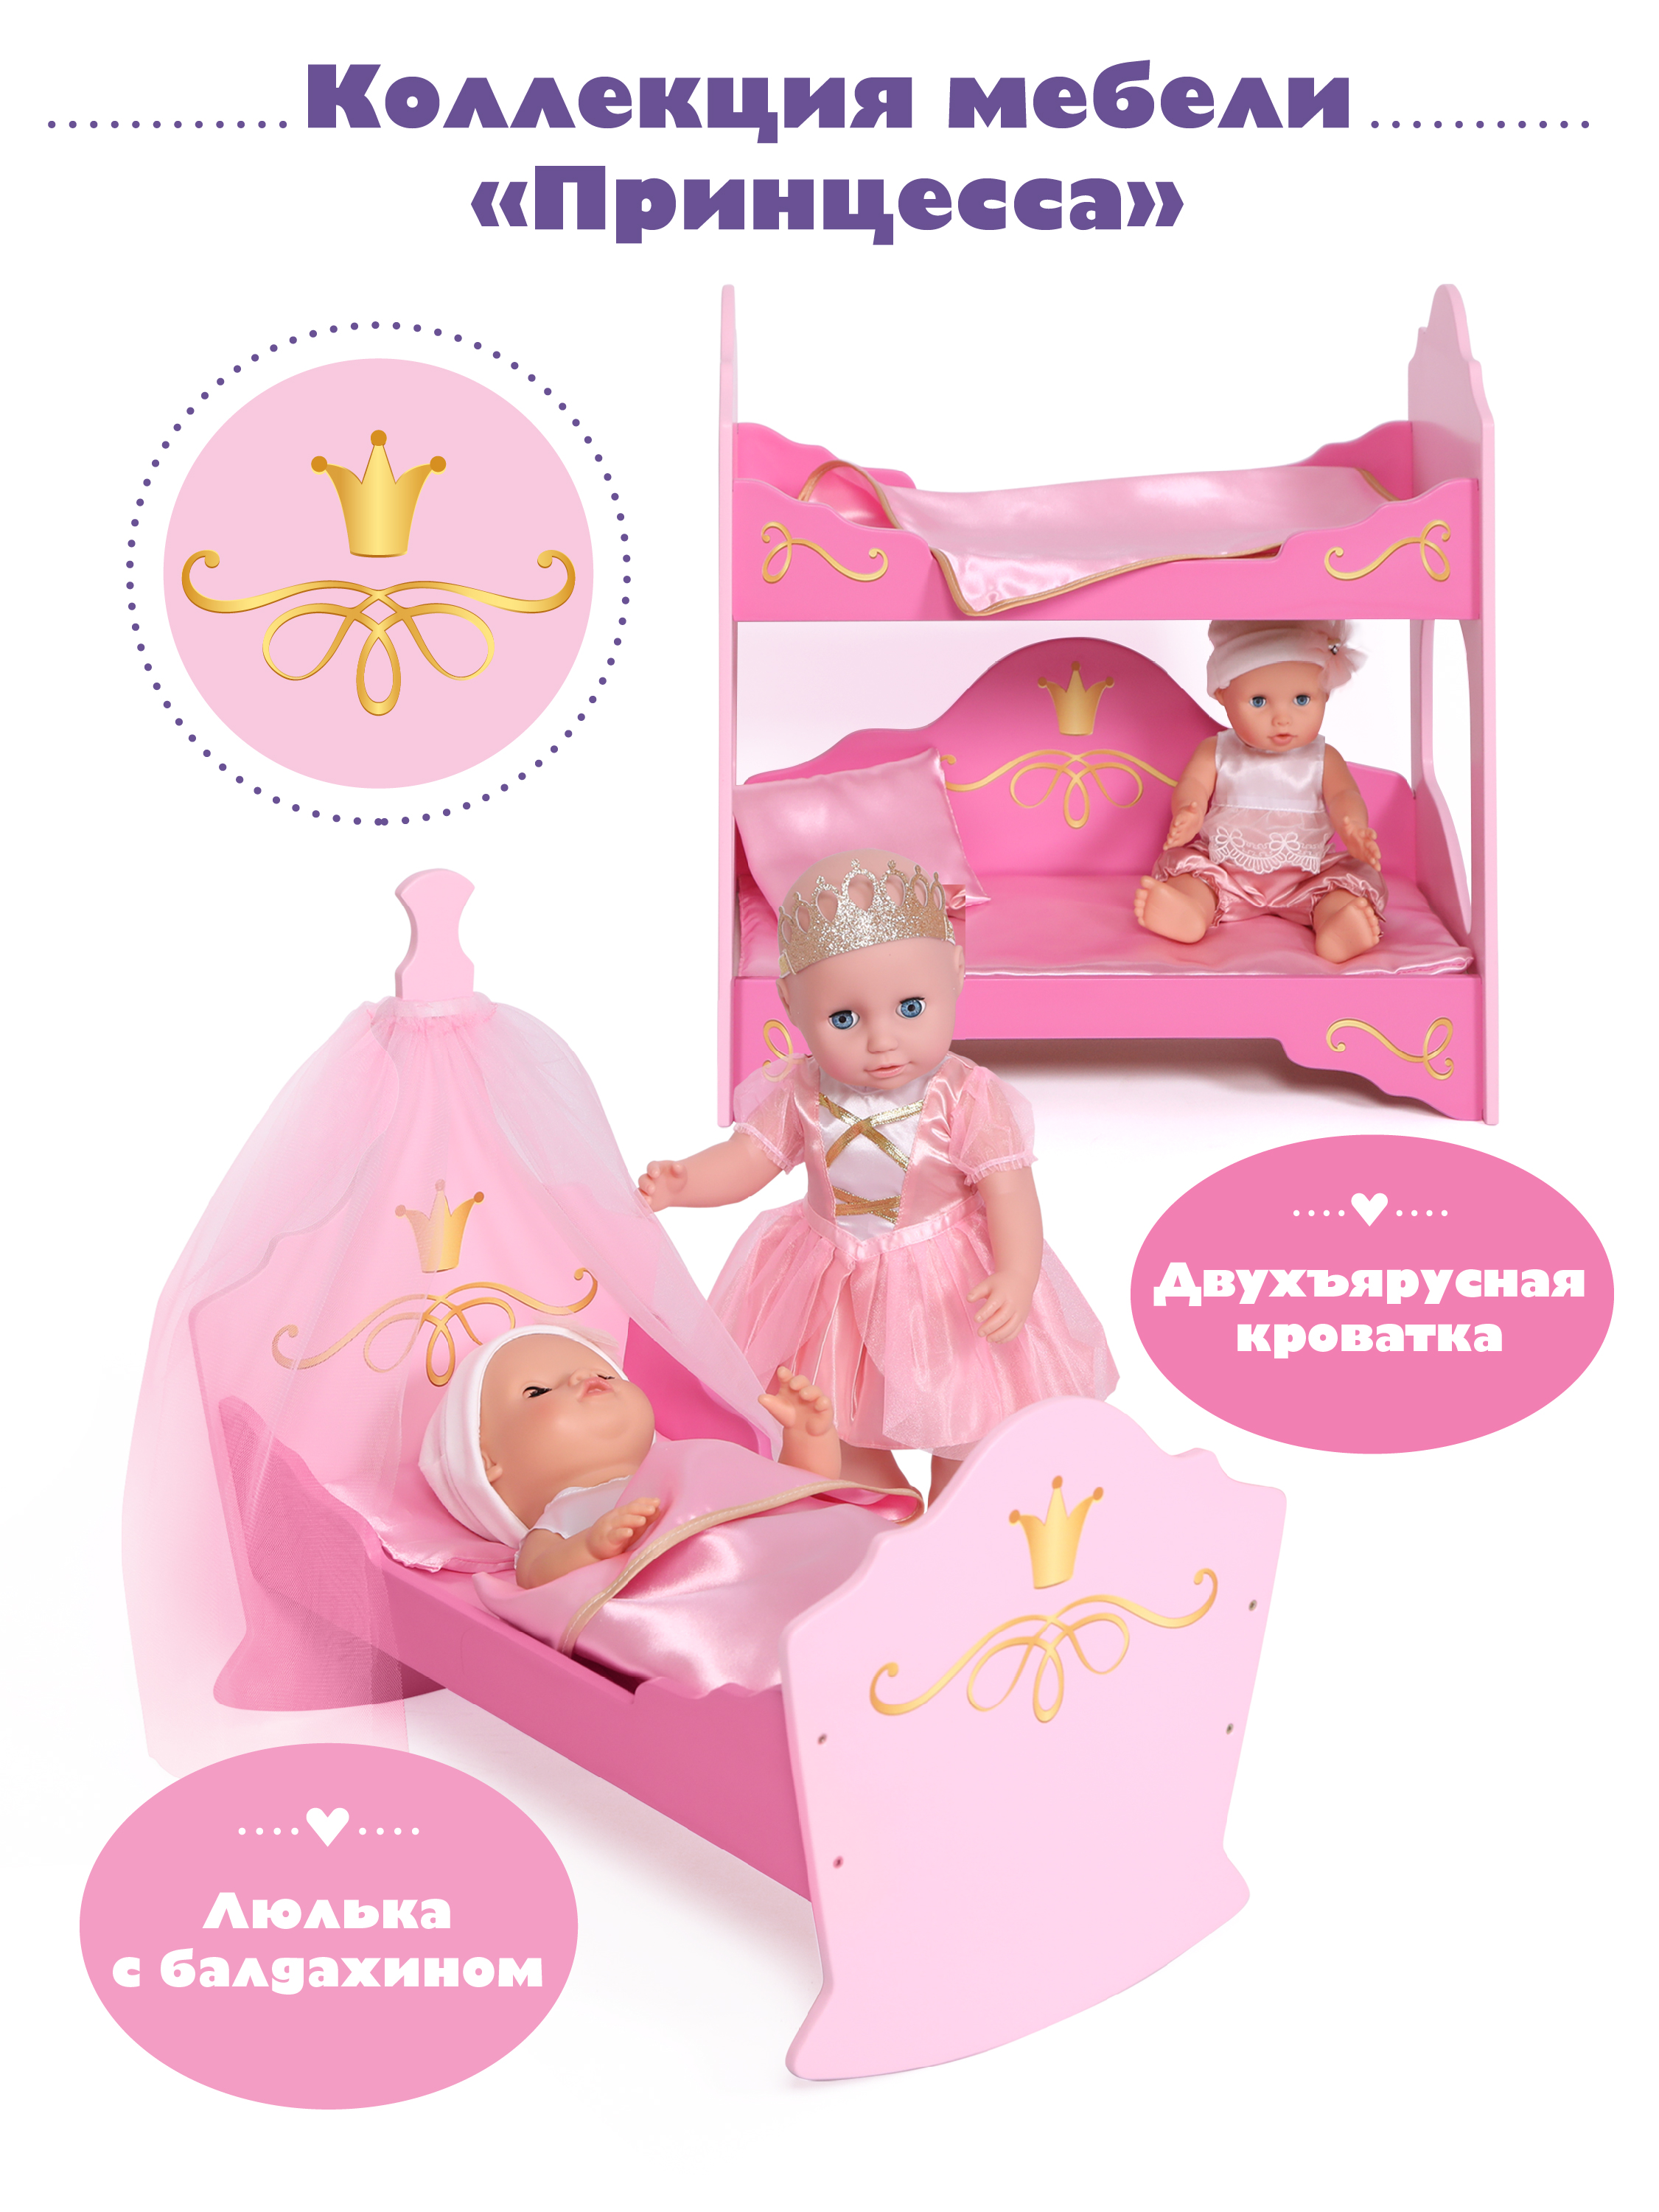 Кроватка Mary Poppins для куклы пупса мебель кукольная люлька кукол. Принцесса 67398 - фото 4